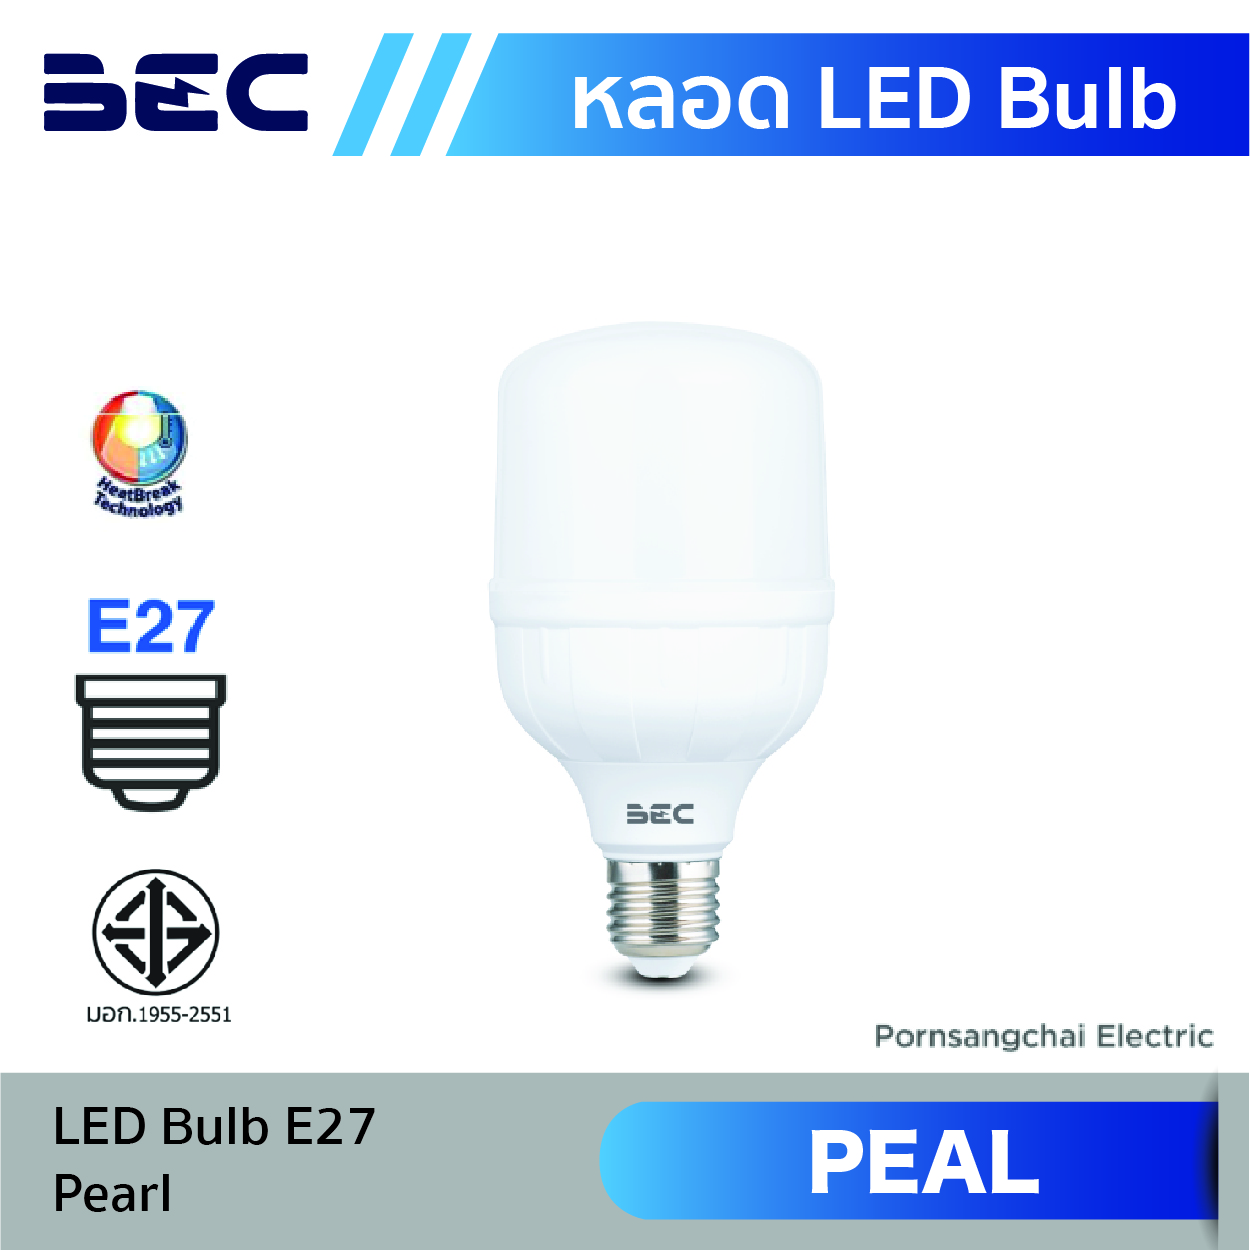 LED Bulb BEC รุ่น Pearl